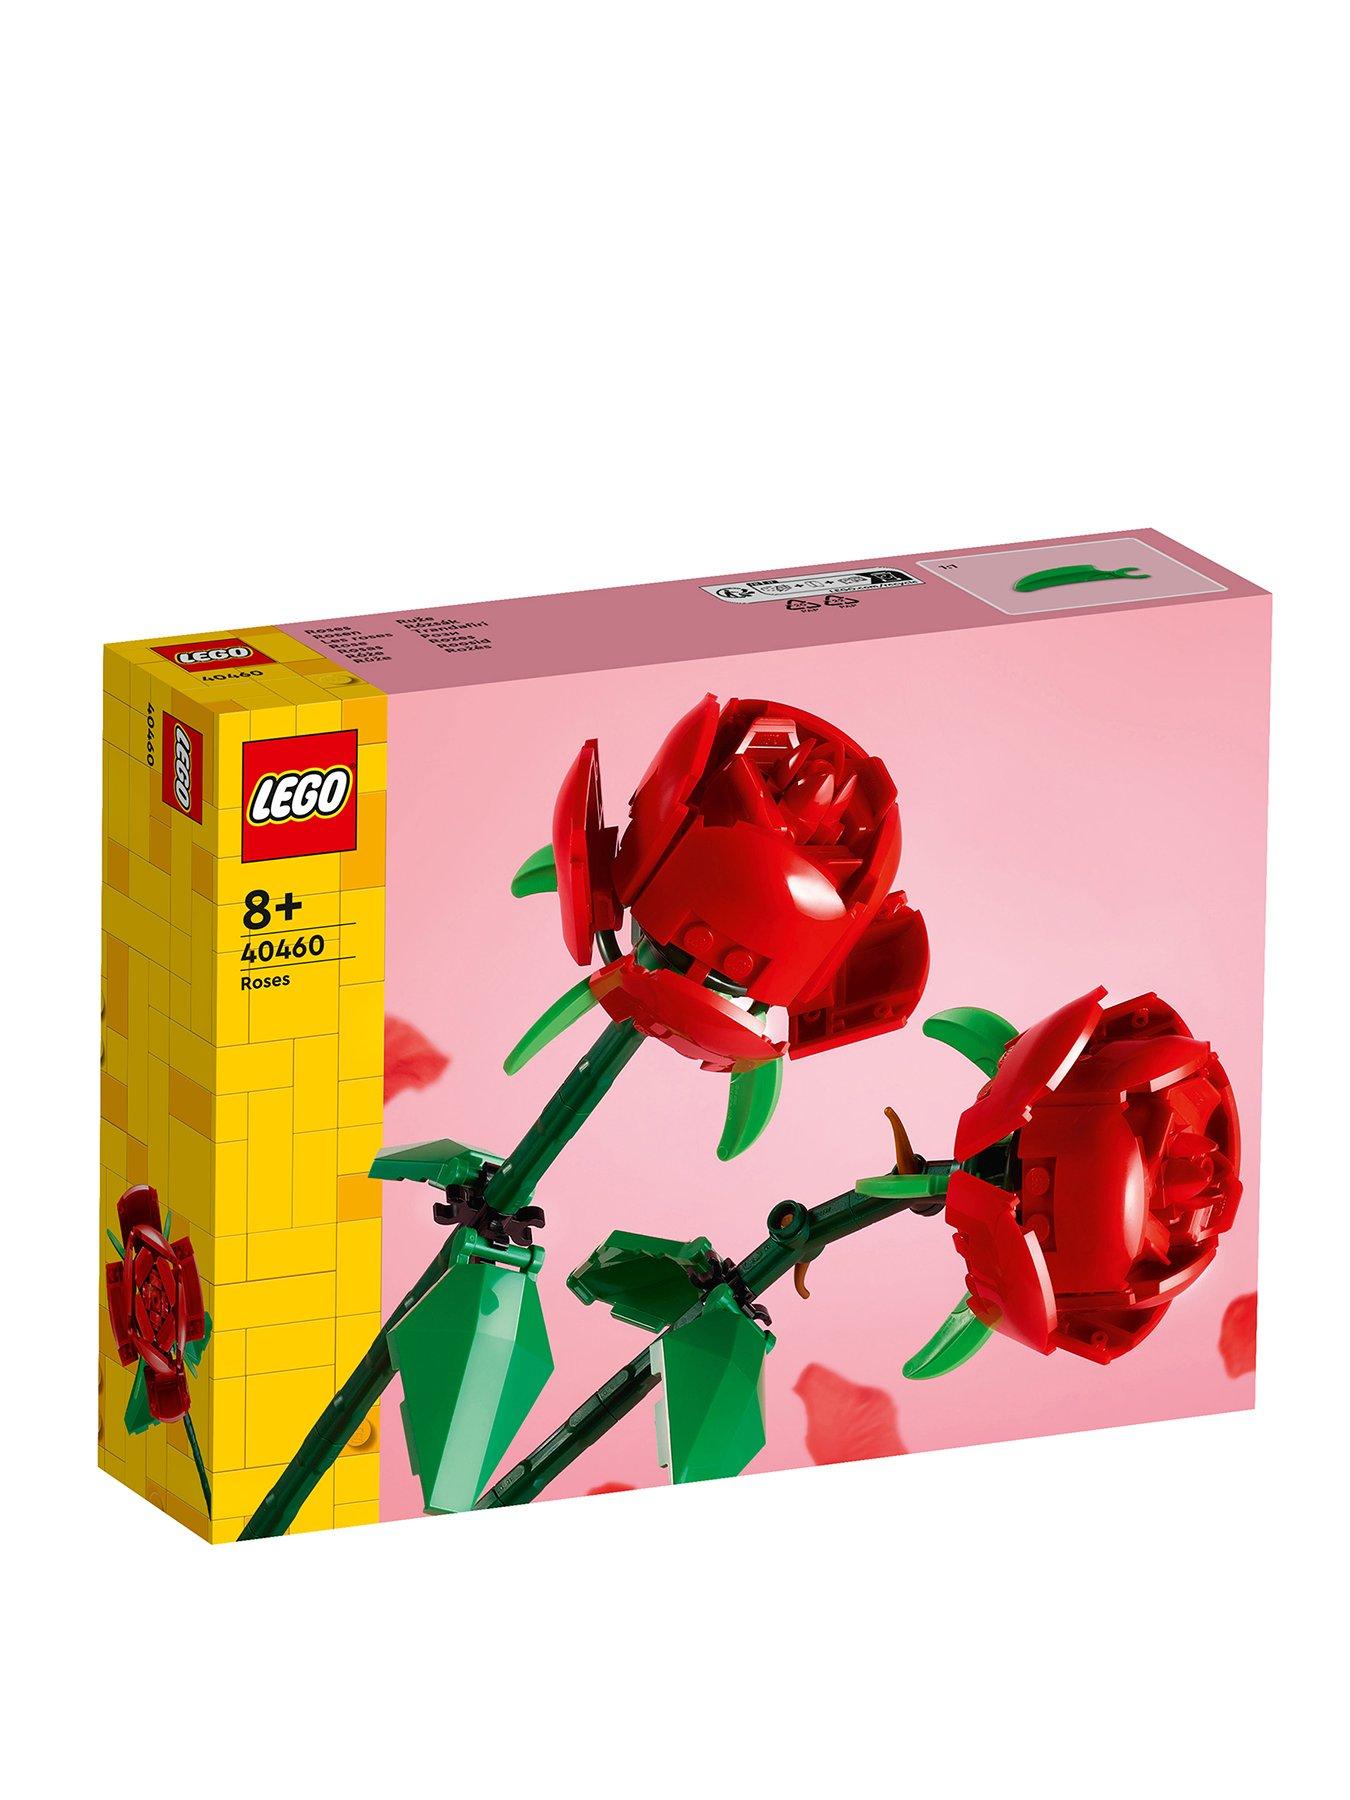 LEGO Roses Flower Bouquet Set 40460